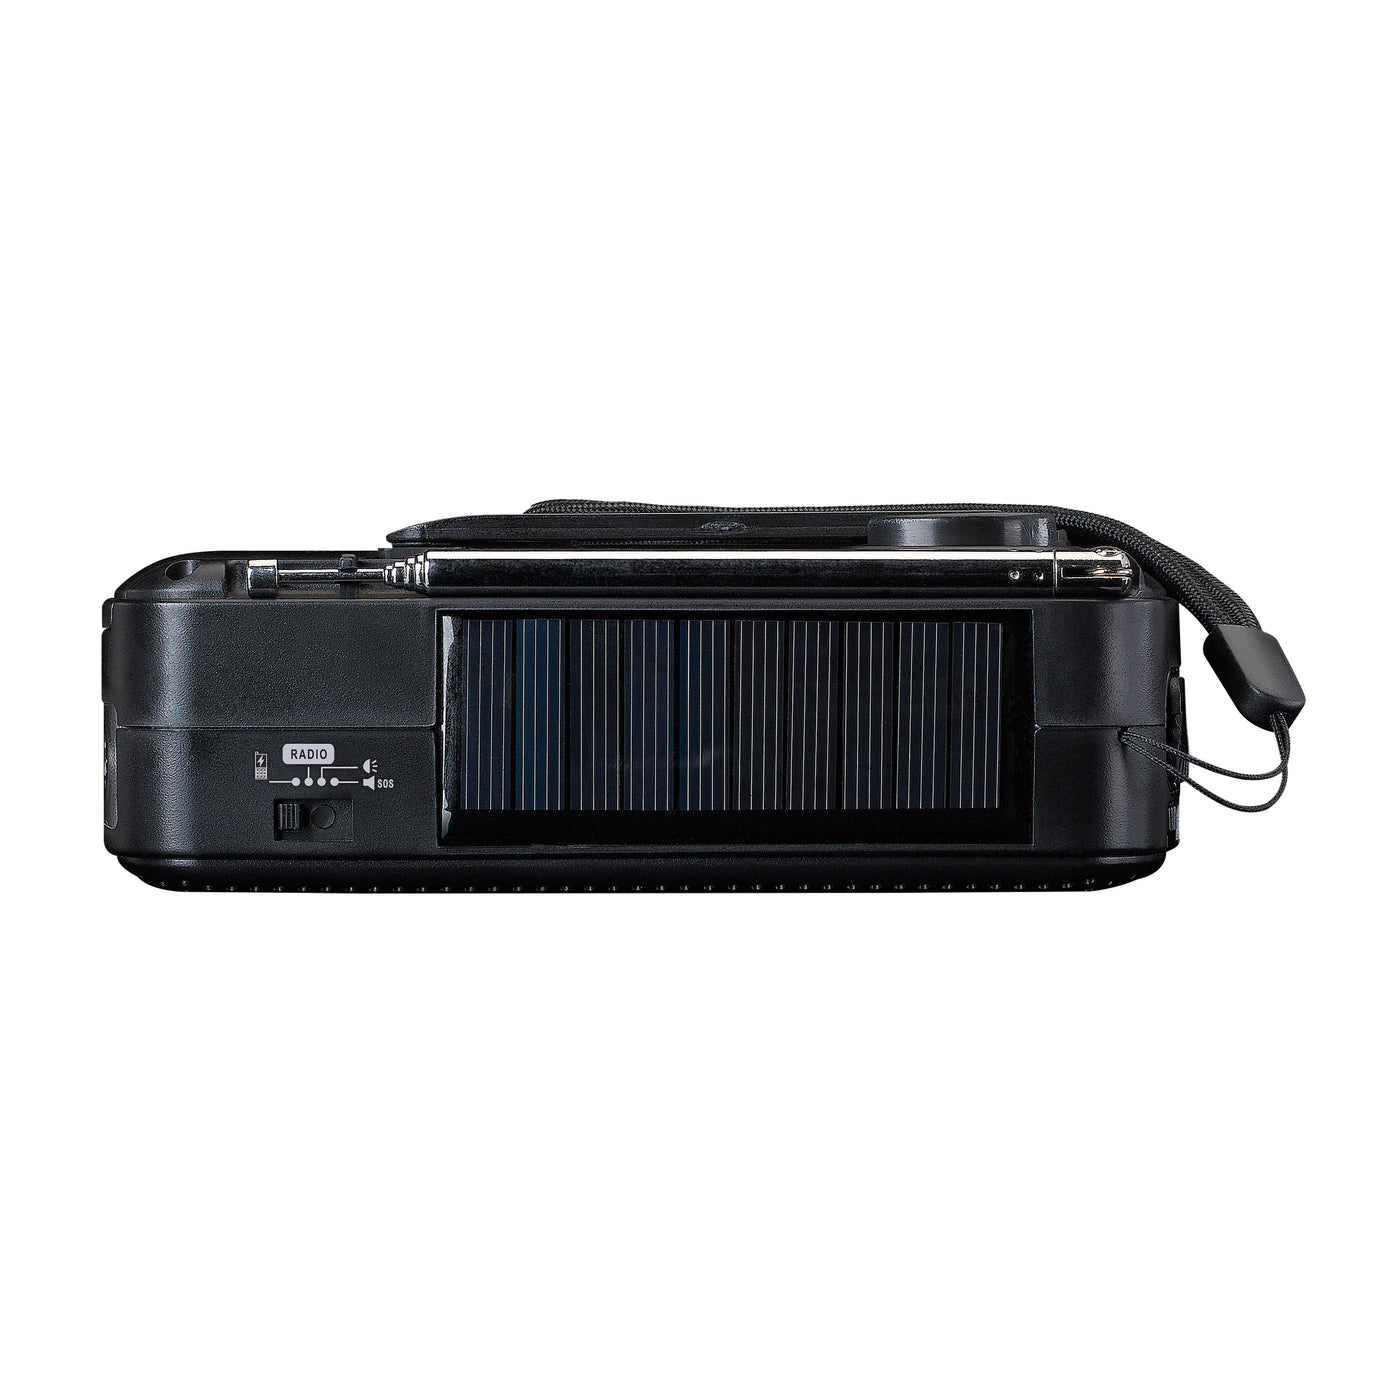 Lenco MCR-113BK - Radio d'urgence portable à manivelle, lampe de poche et banque d'alimentation en un seul appareil - Noir